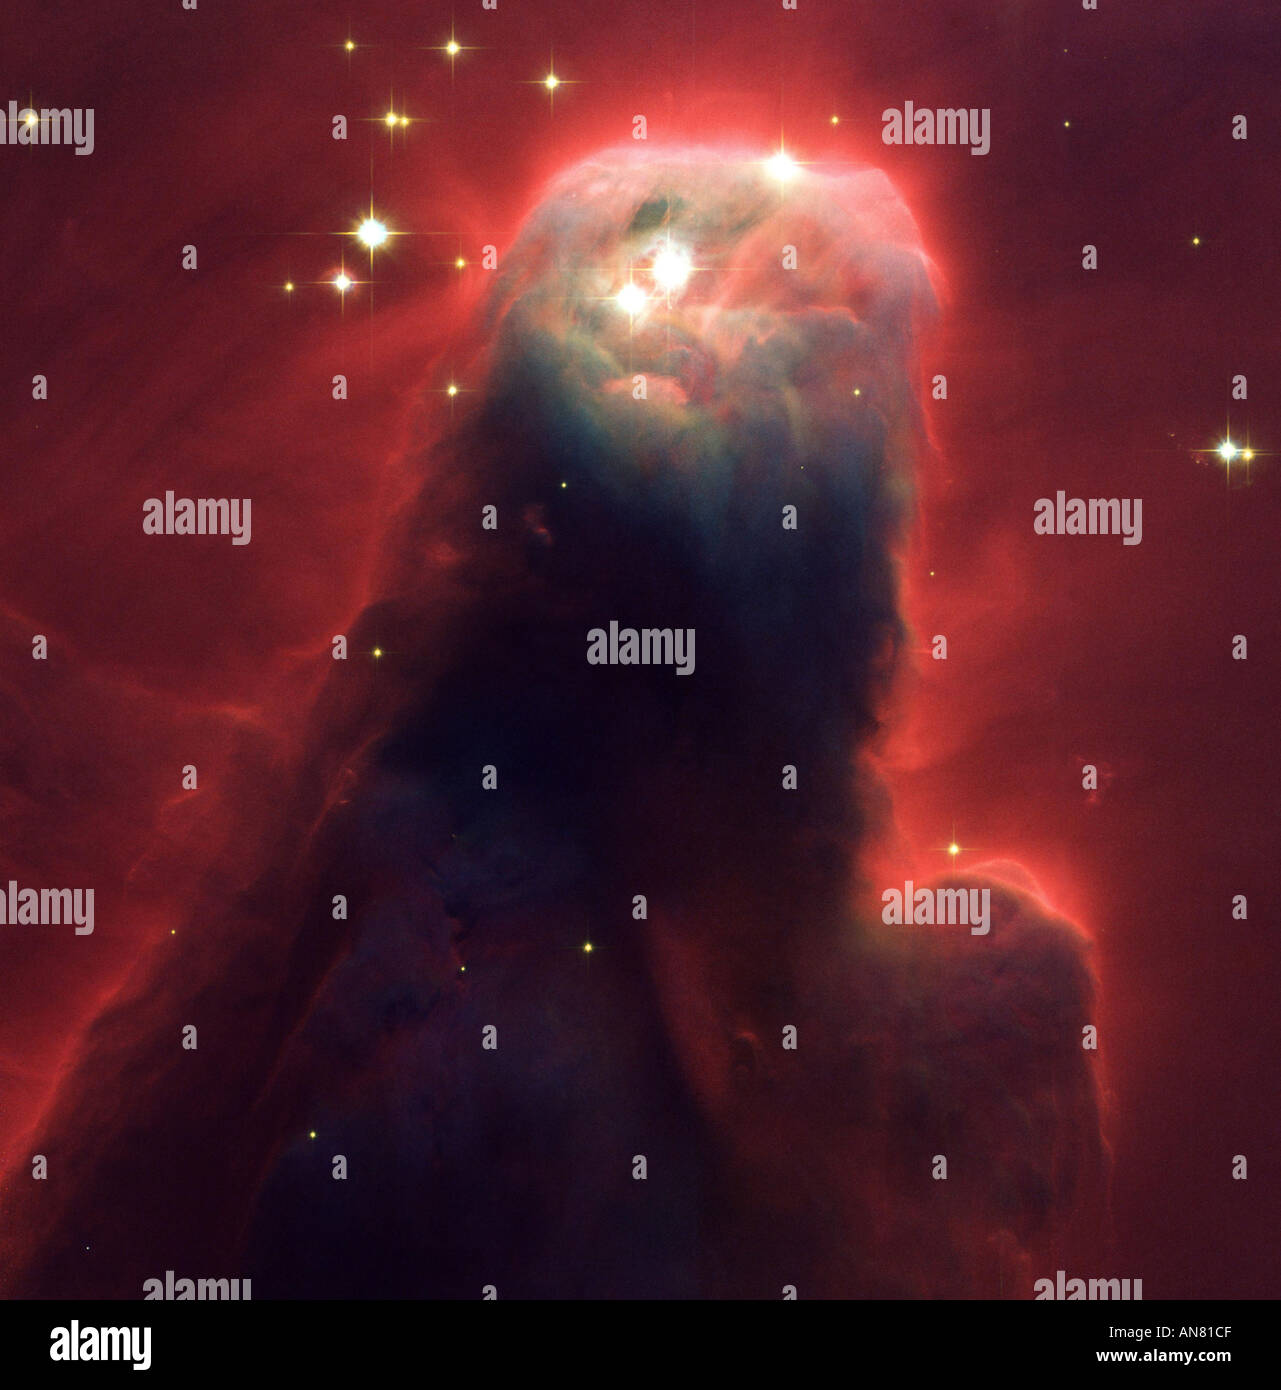 Kegel-Säulen und majestätisch fließenden Formen gibt es zuhauf in stellaren Baumschulen Radix Wolken Gas Staub Neugeborenen Sternen Hubble-Bild Stockfoto